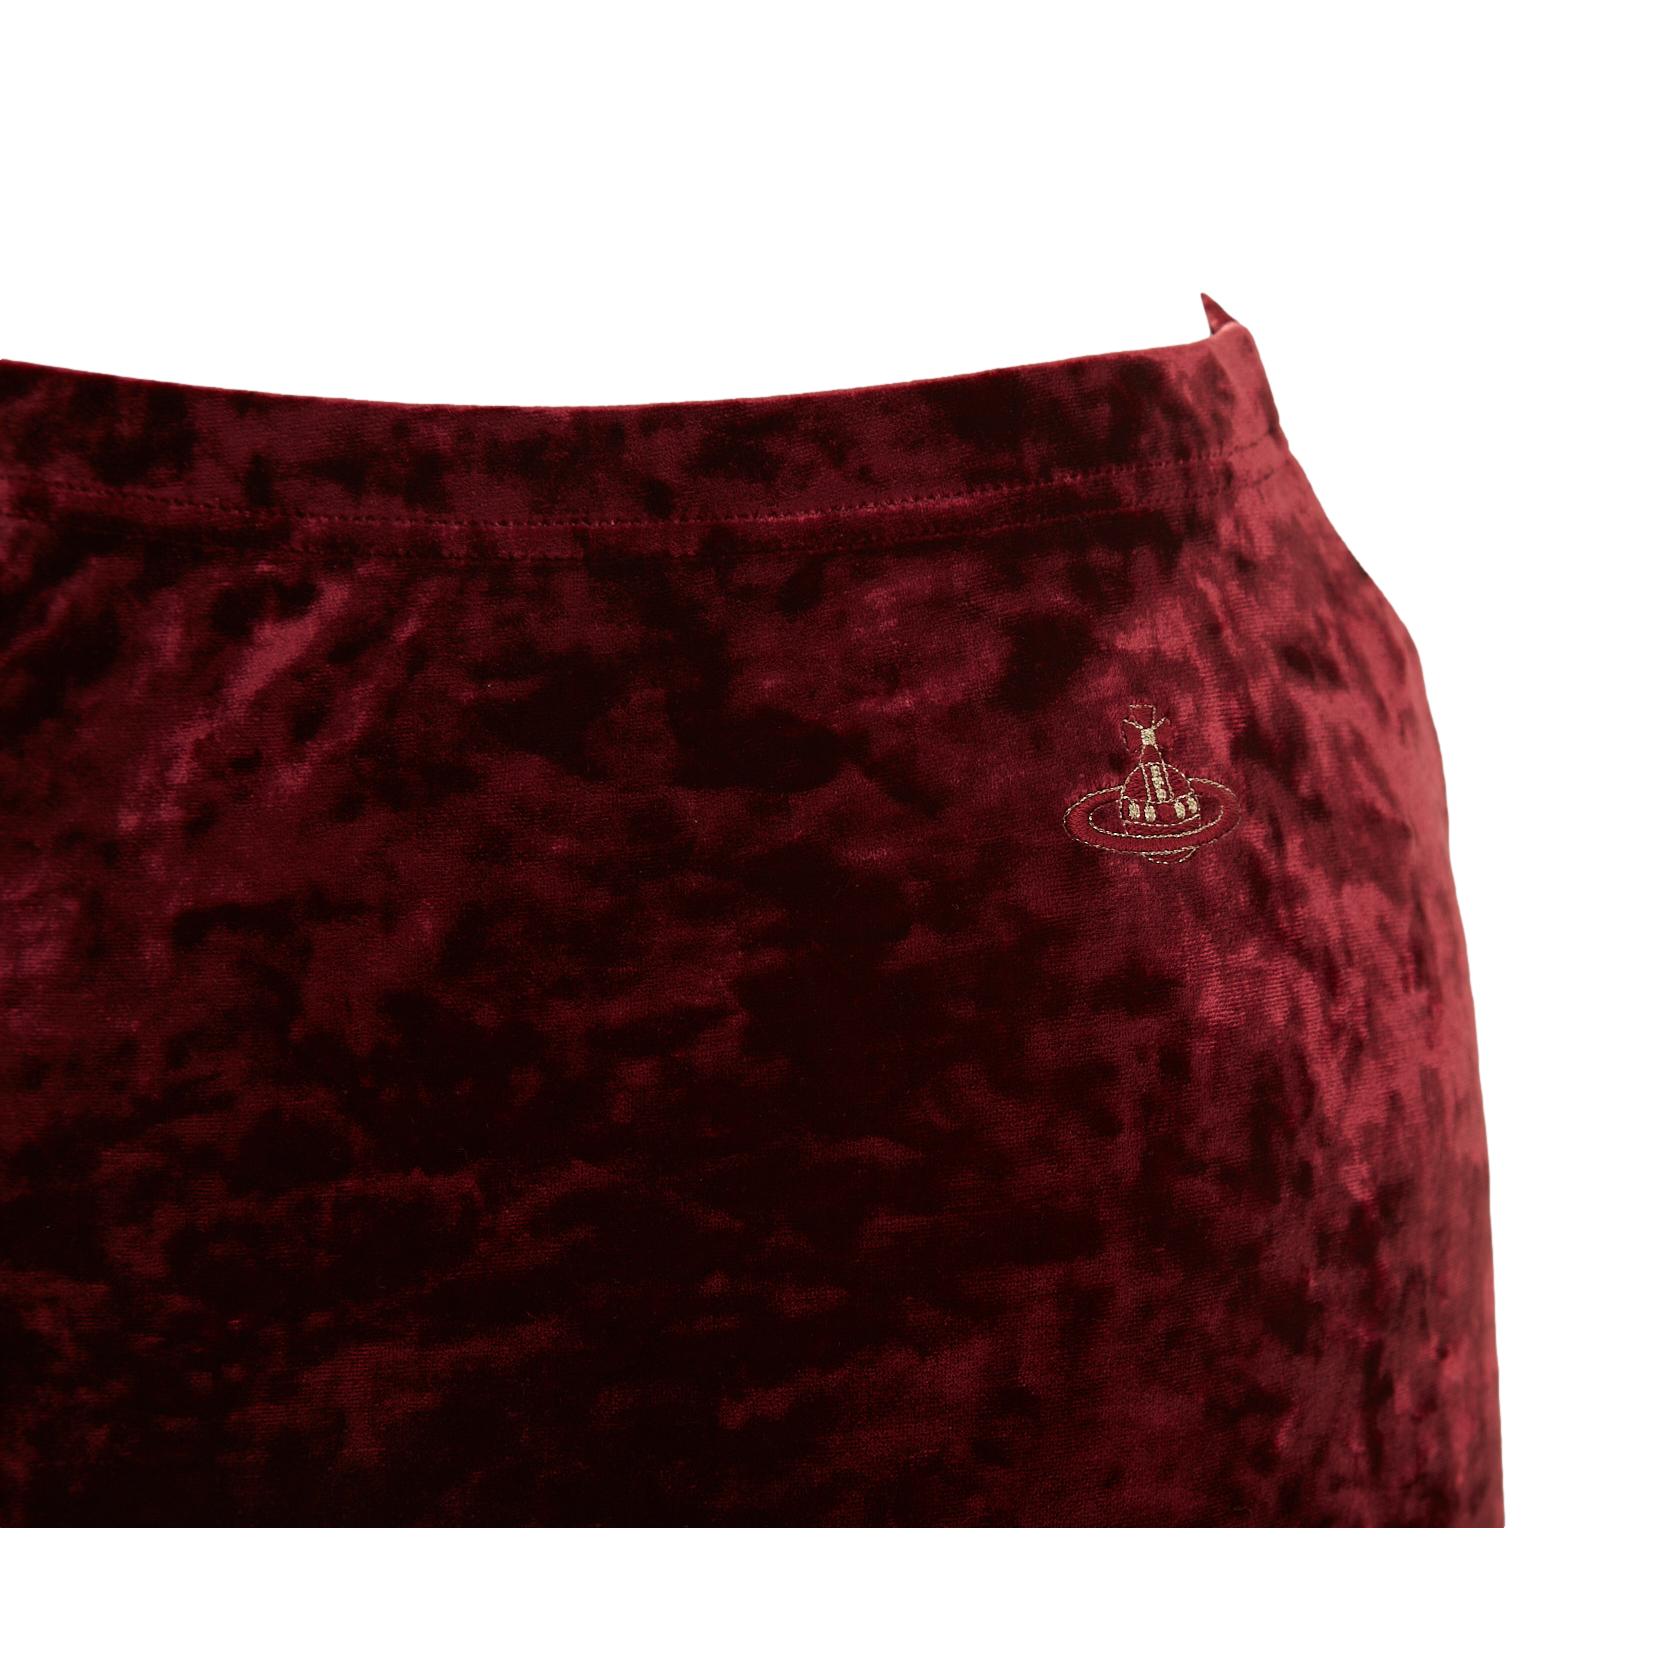 Vivienne Westwood Burgundy Velvet Skirt